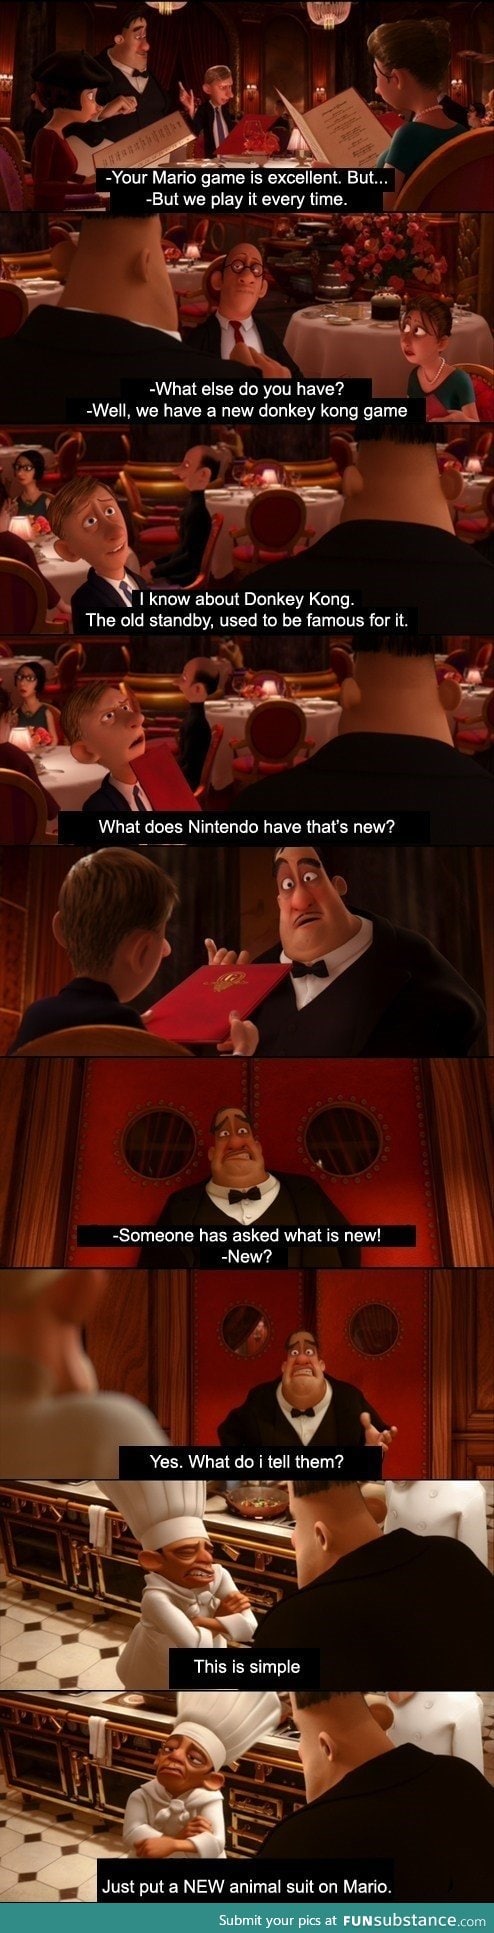 Nintendo in a Nutshell